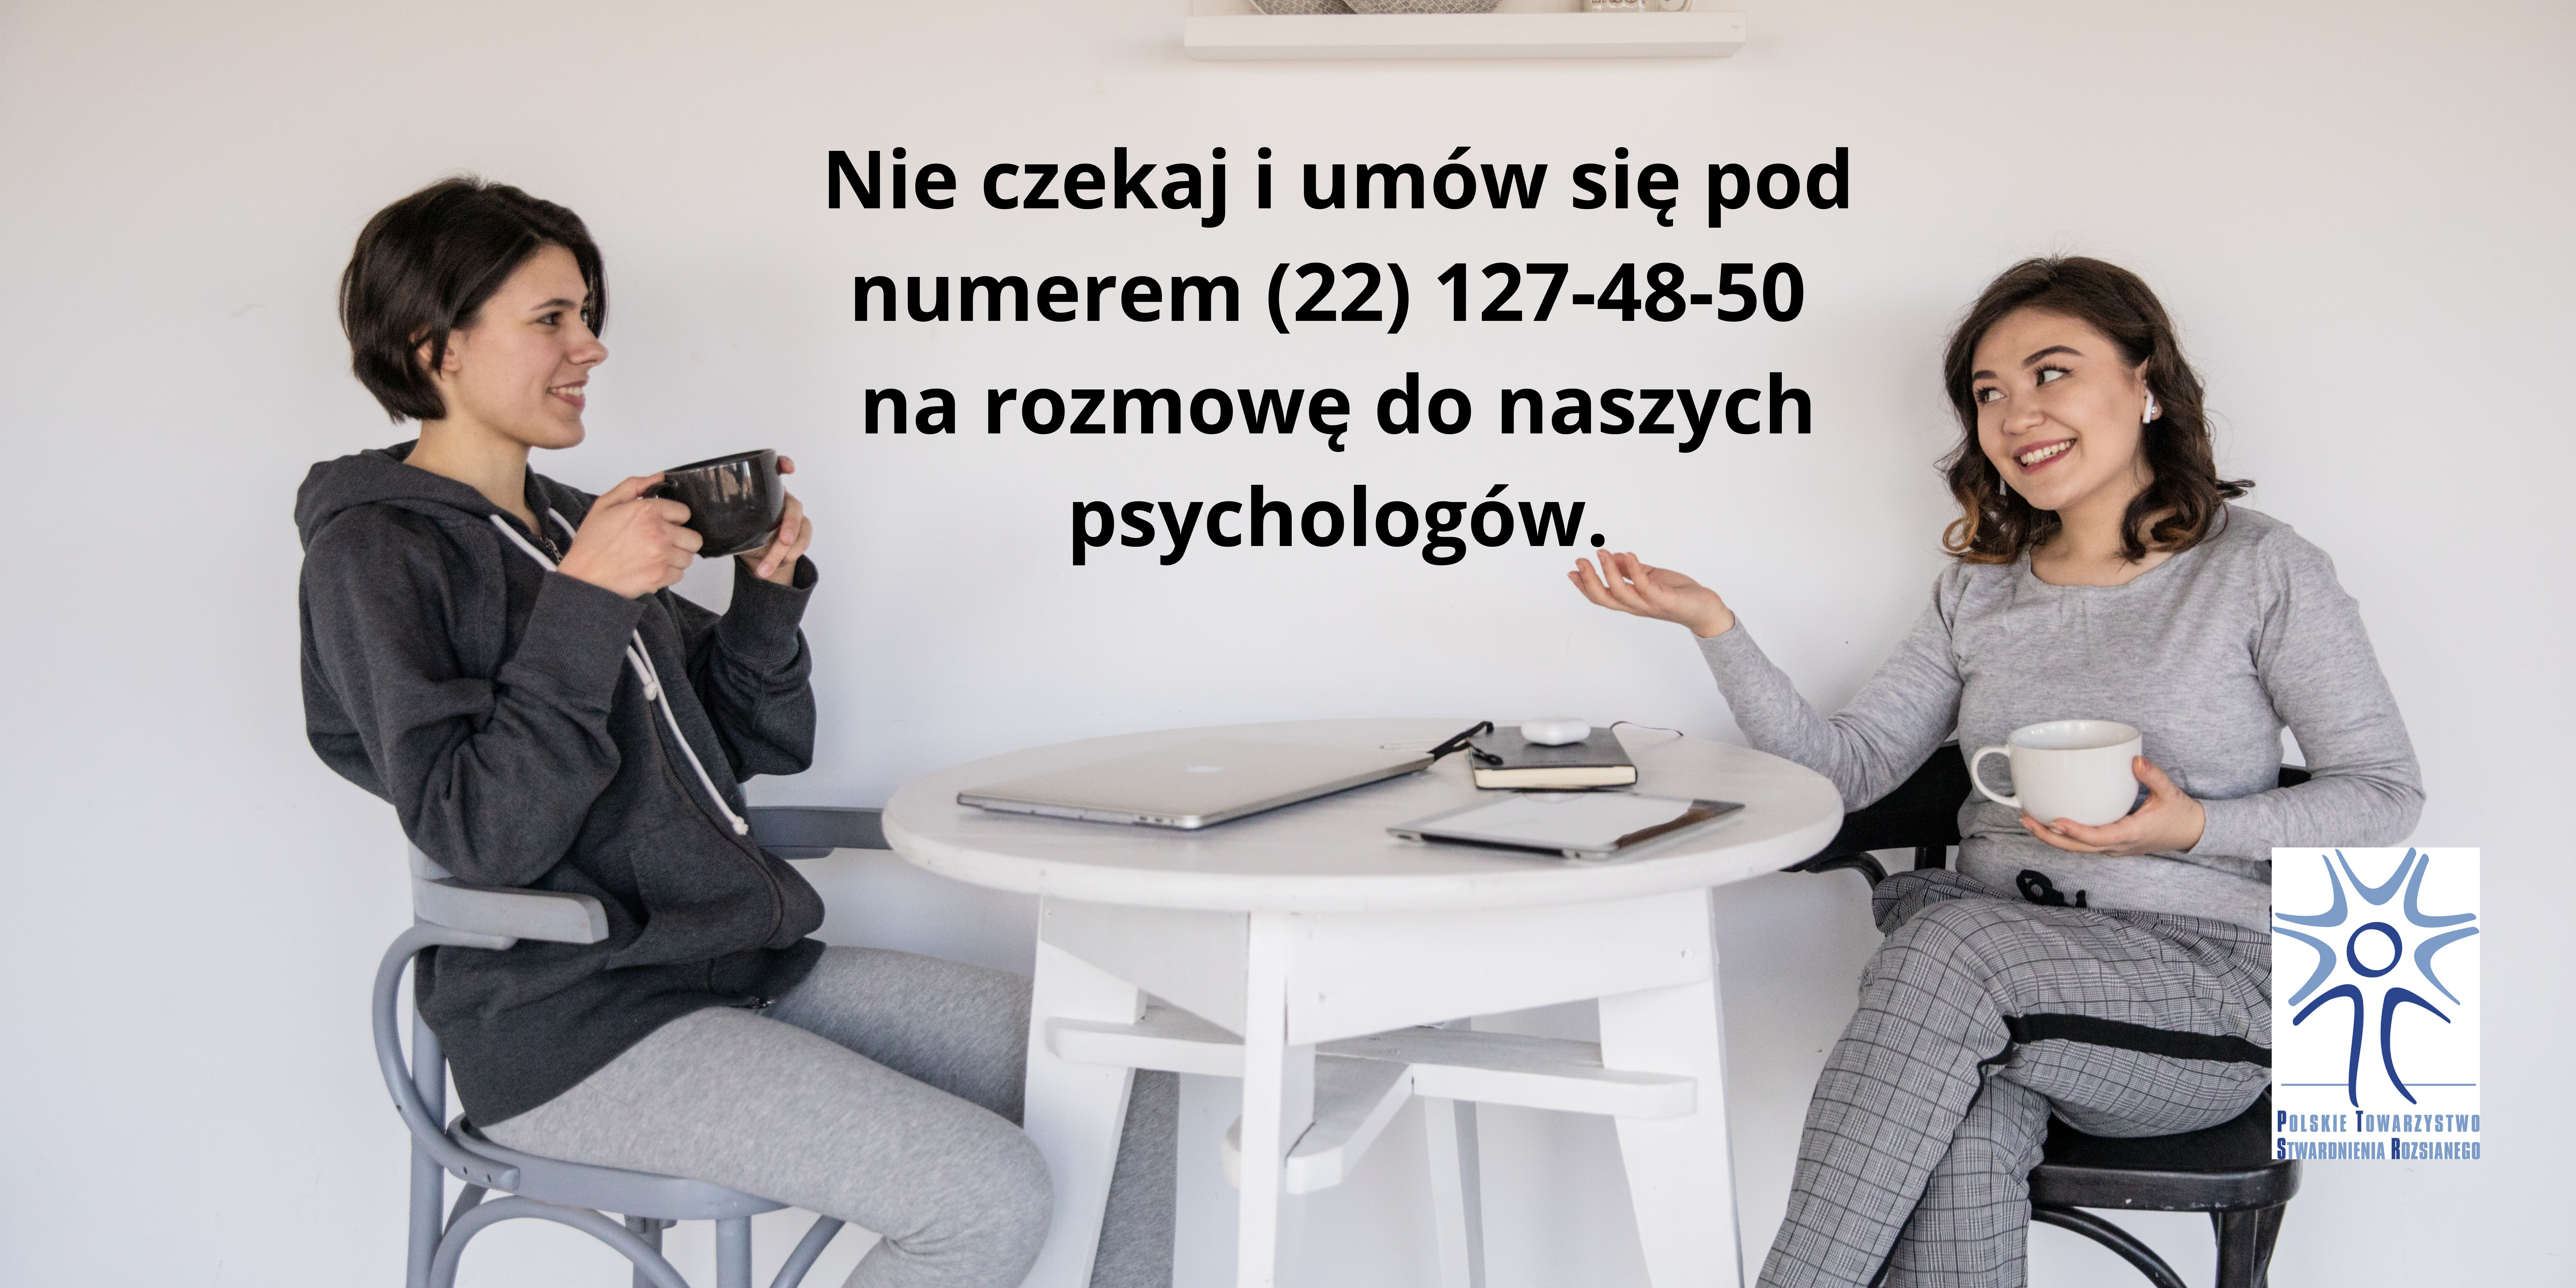 Telefoniczna Poradnia Psychologiczna - specjaliści do Twojej dyspozycji